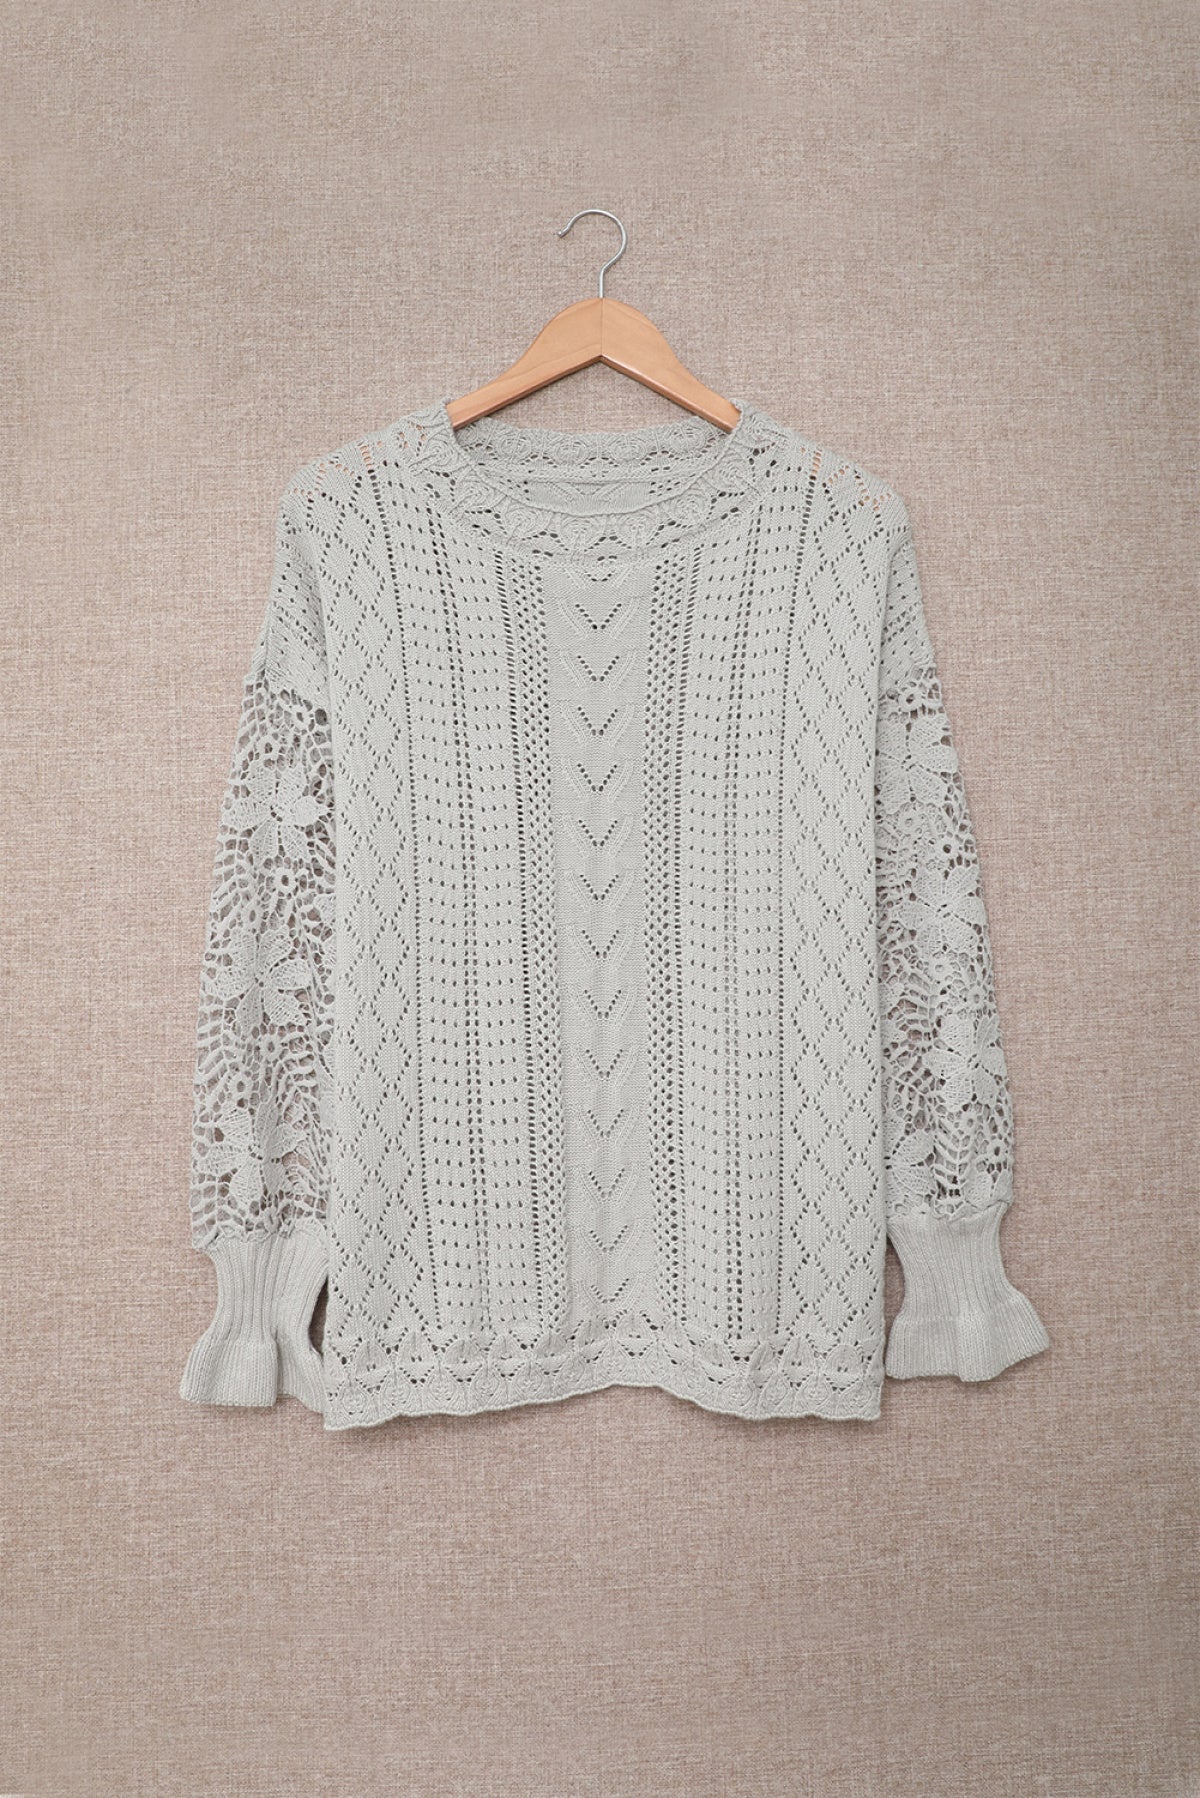 Romantasy Lace Sweater